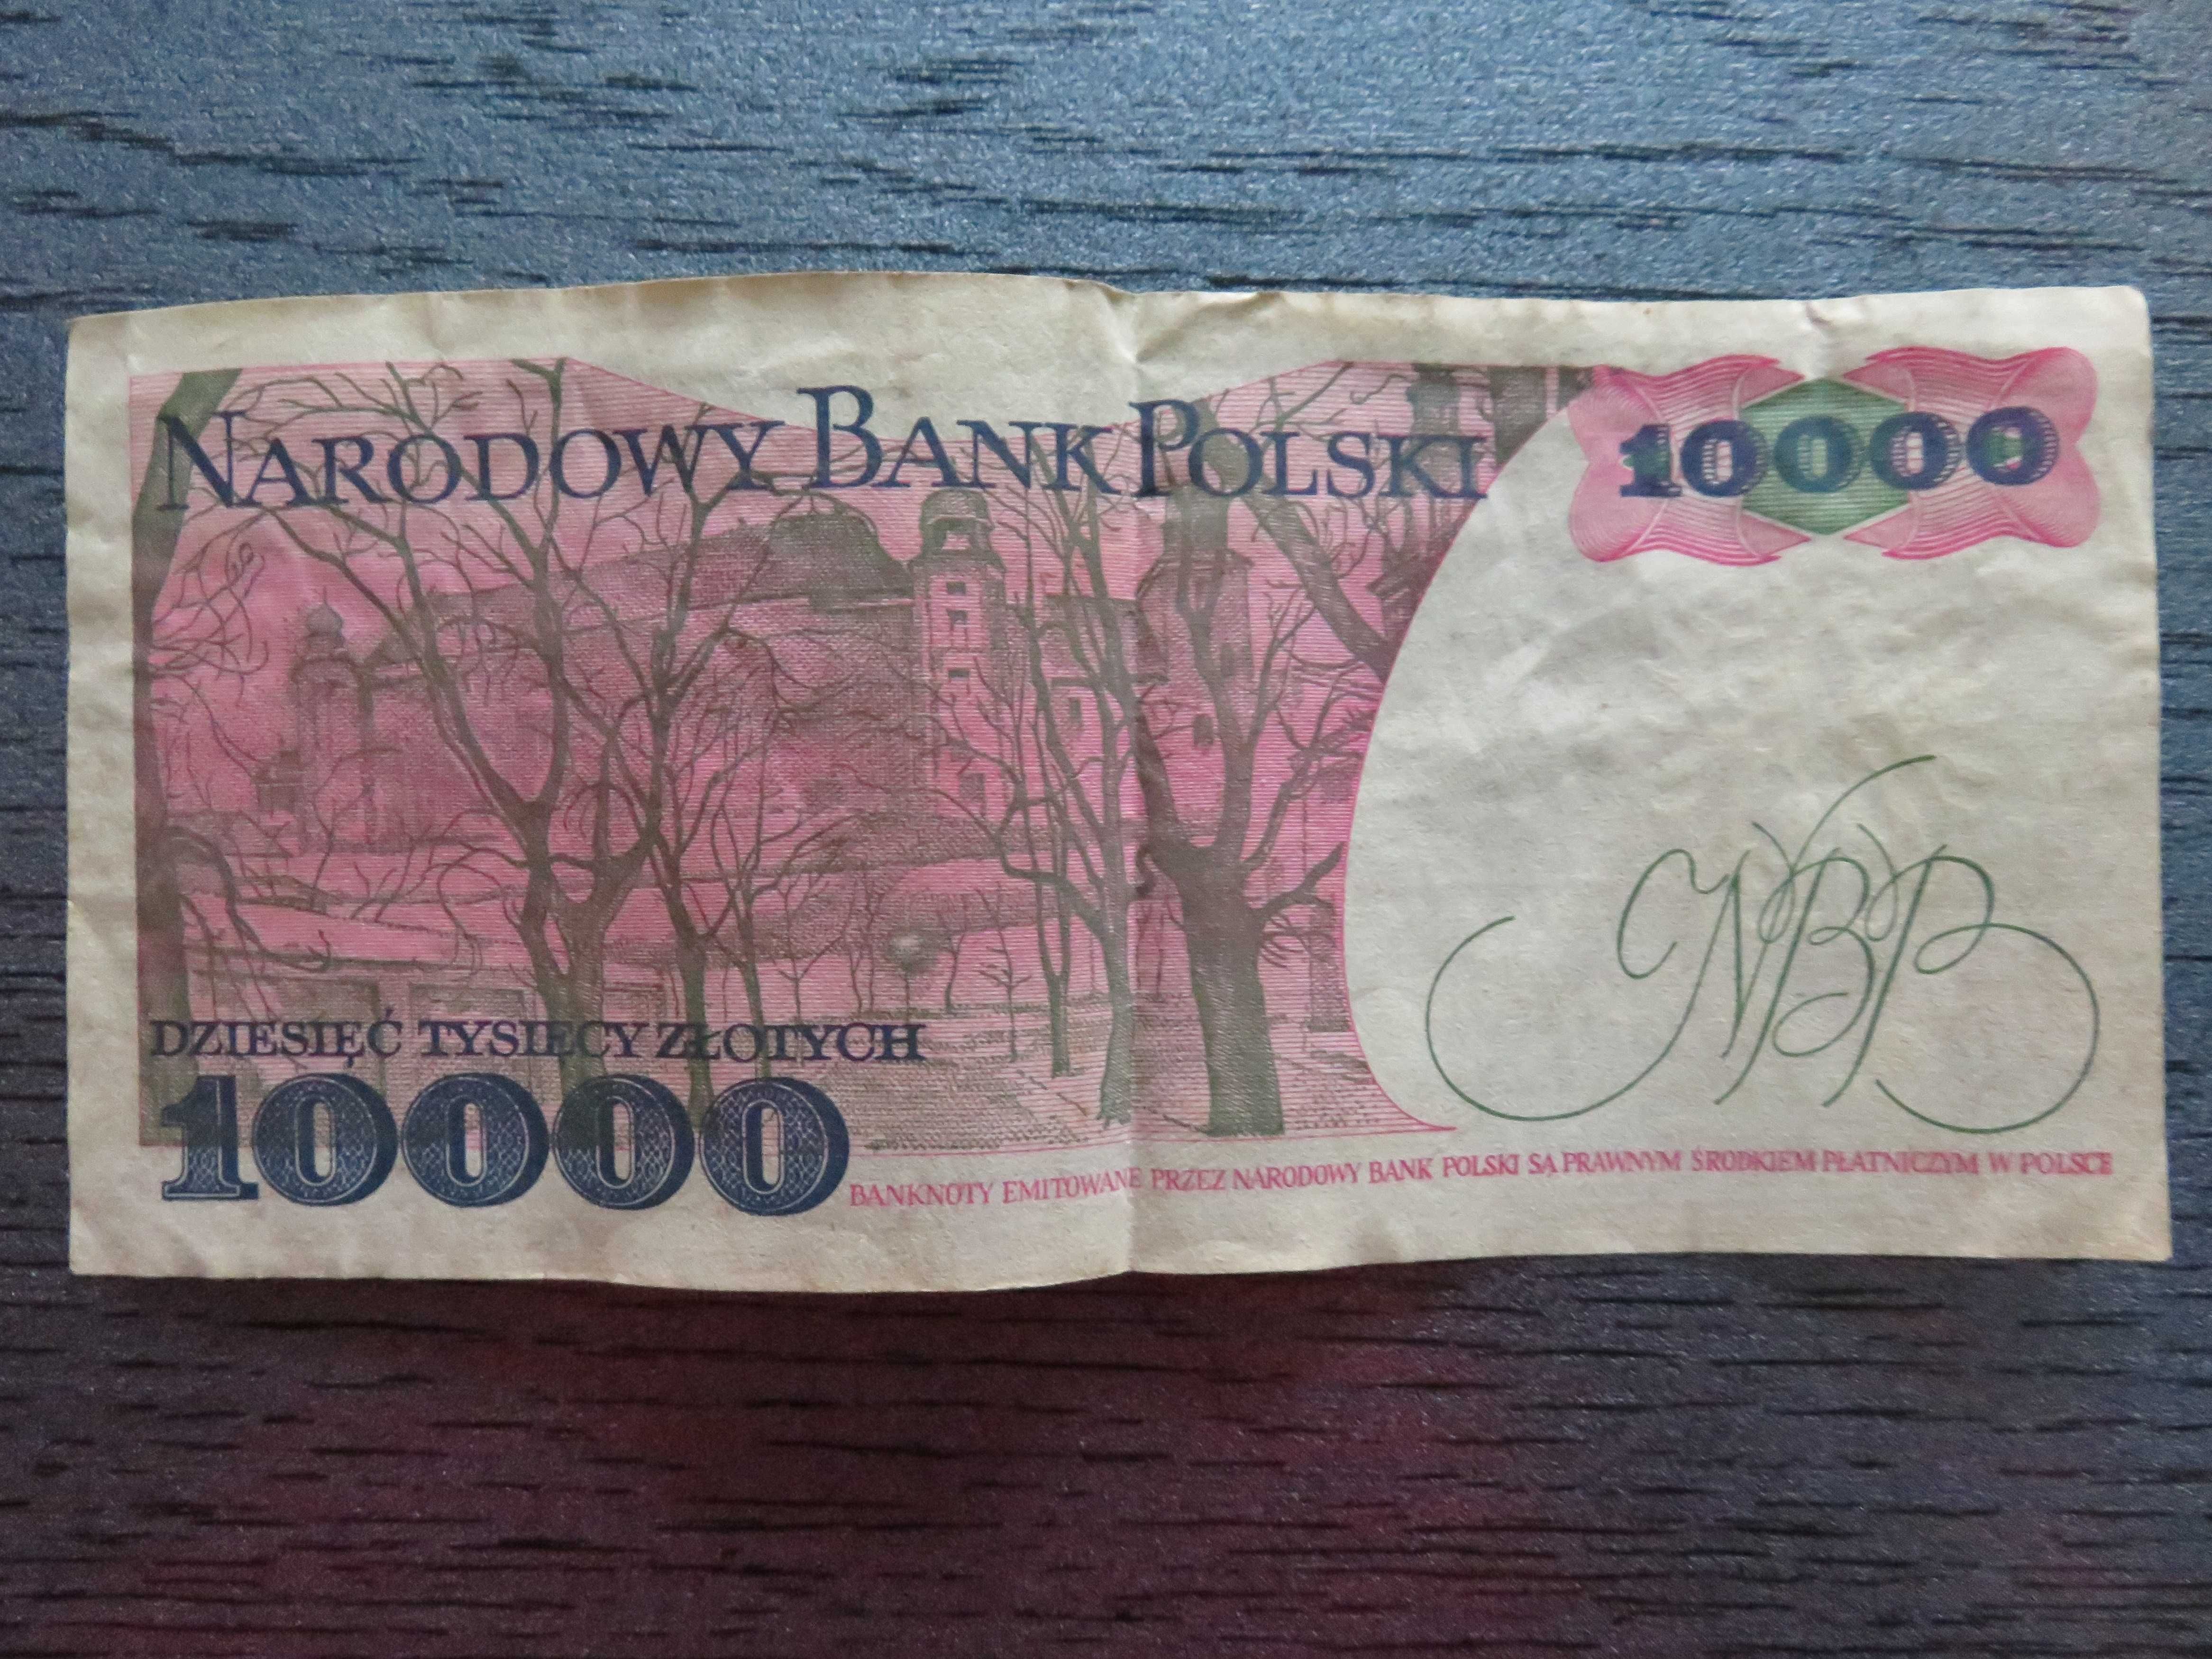 Kolekcjonerskie banknoty PRL 10000 zł w idealnym stanie (jak nowe)!!